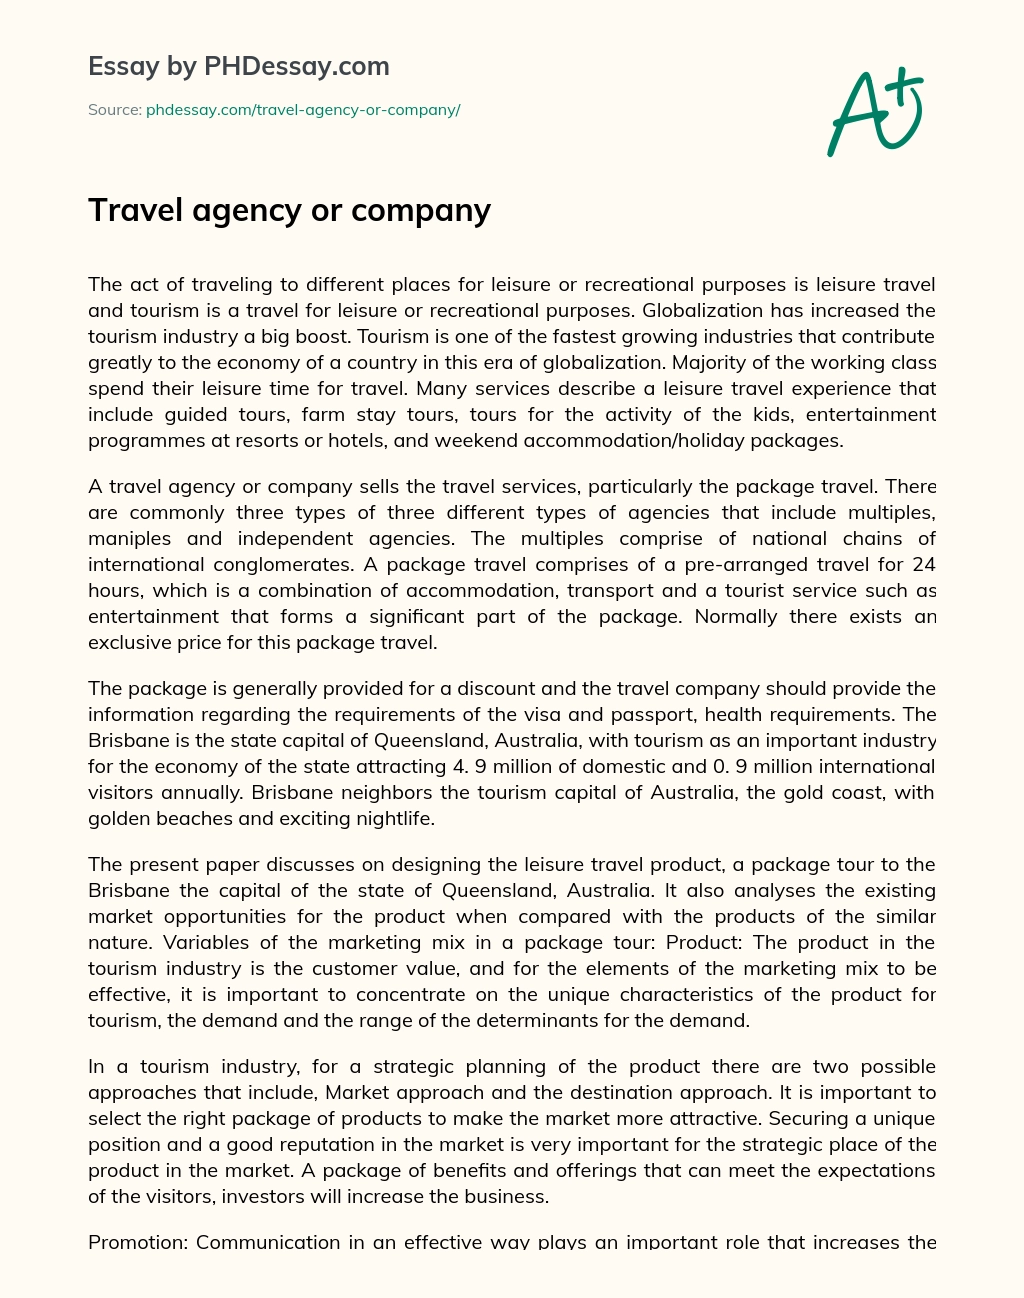 Travel agency or company essay